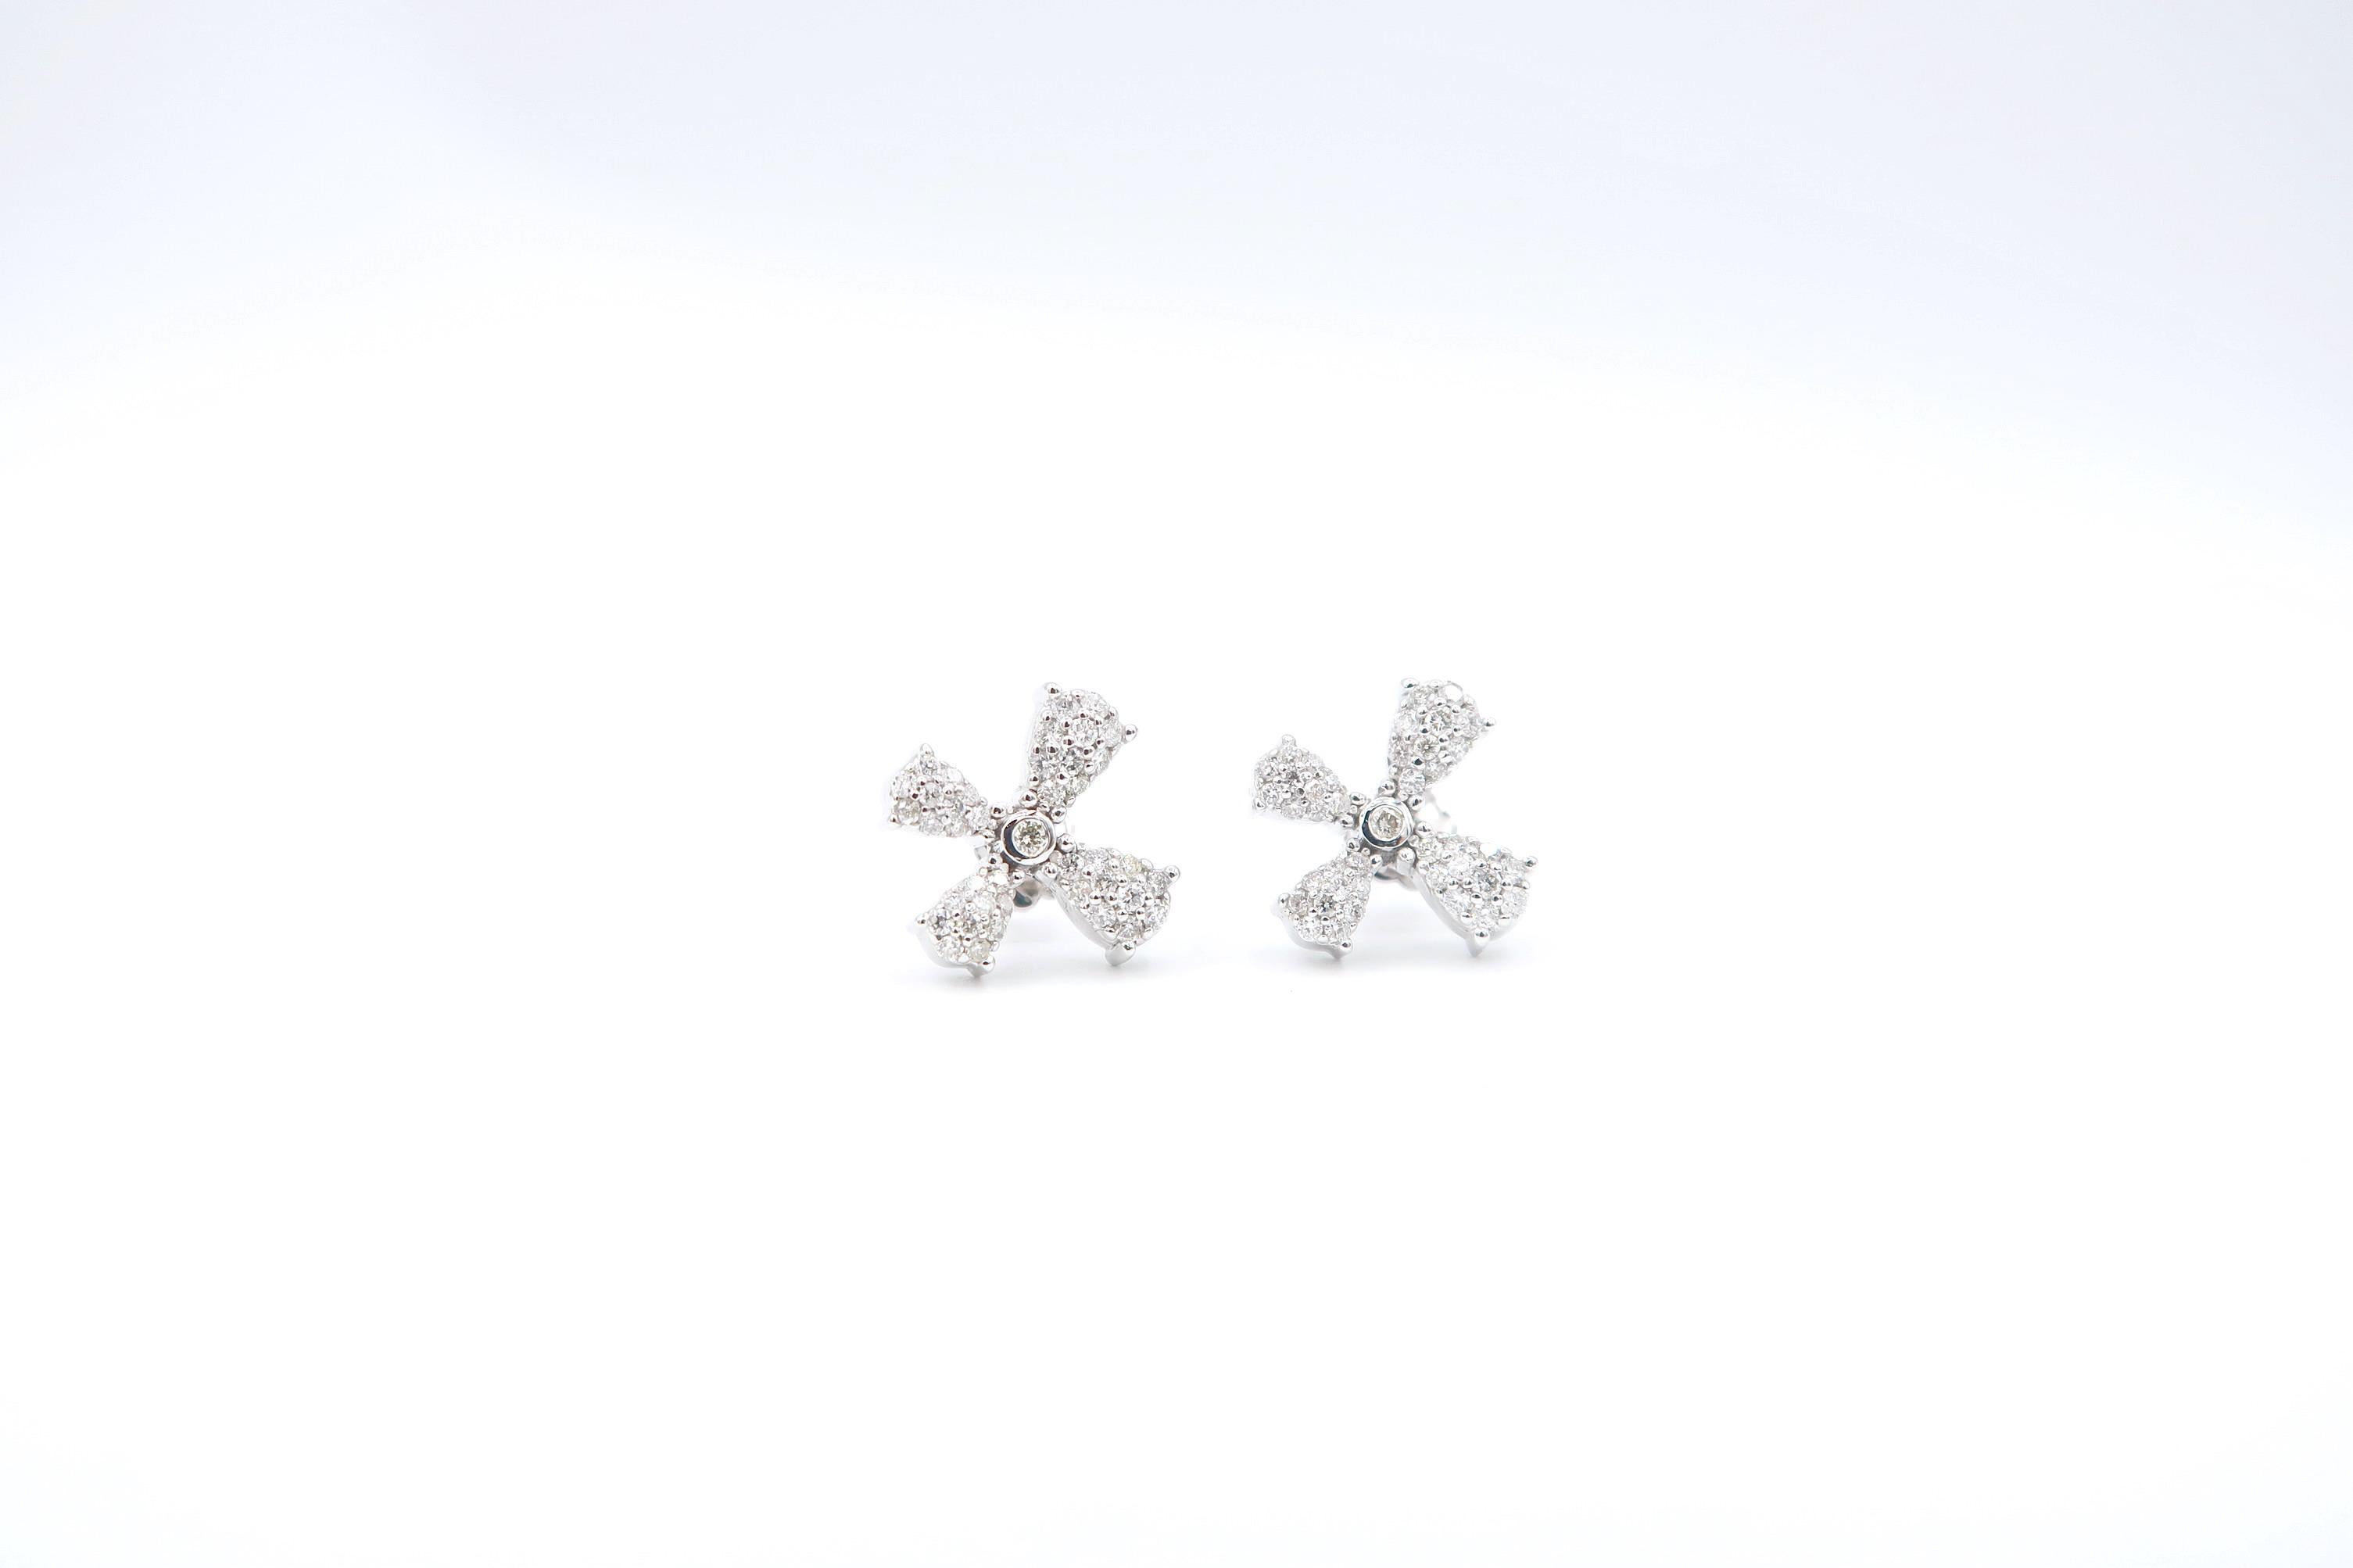 Flying Dandelion Seed Diamond Earrings in 18K White Gold

Diamond: 0.80ct.
Gold: 18K Gold 5.56g.